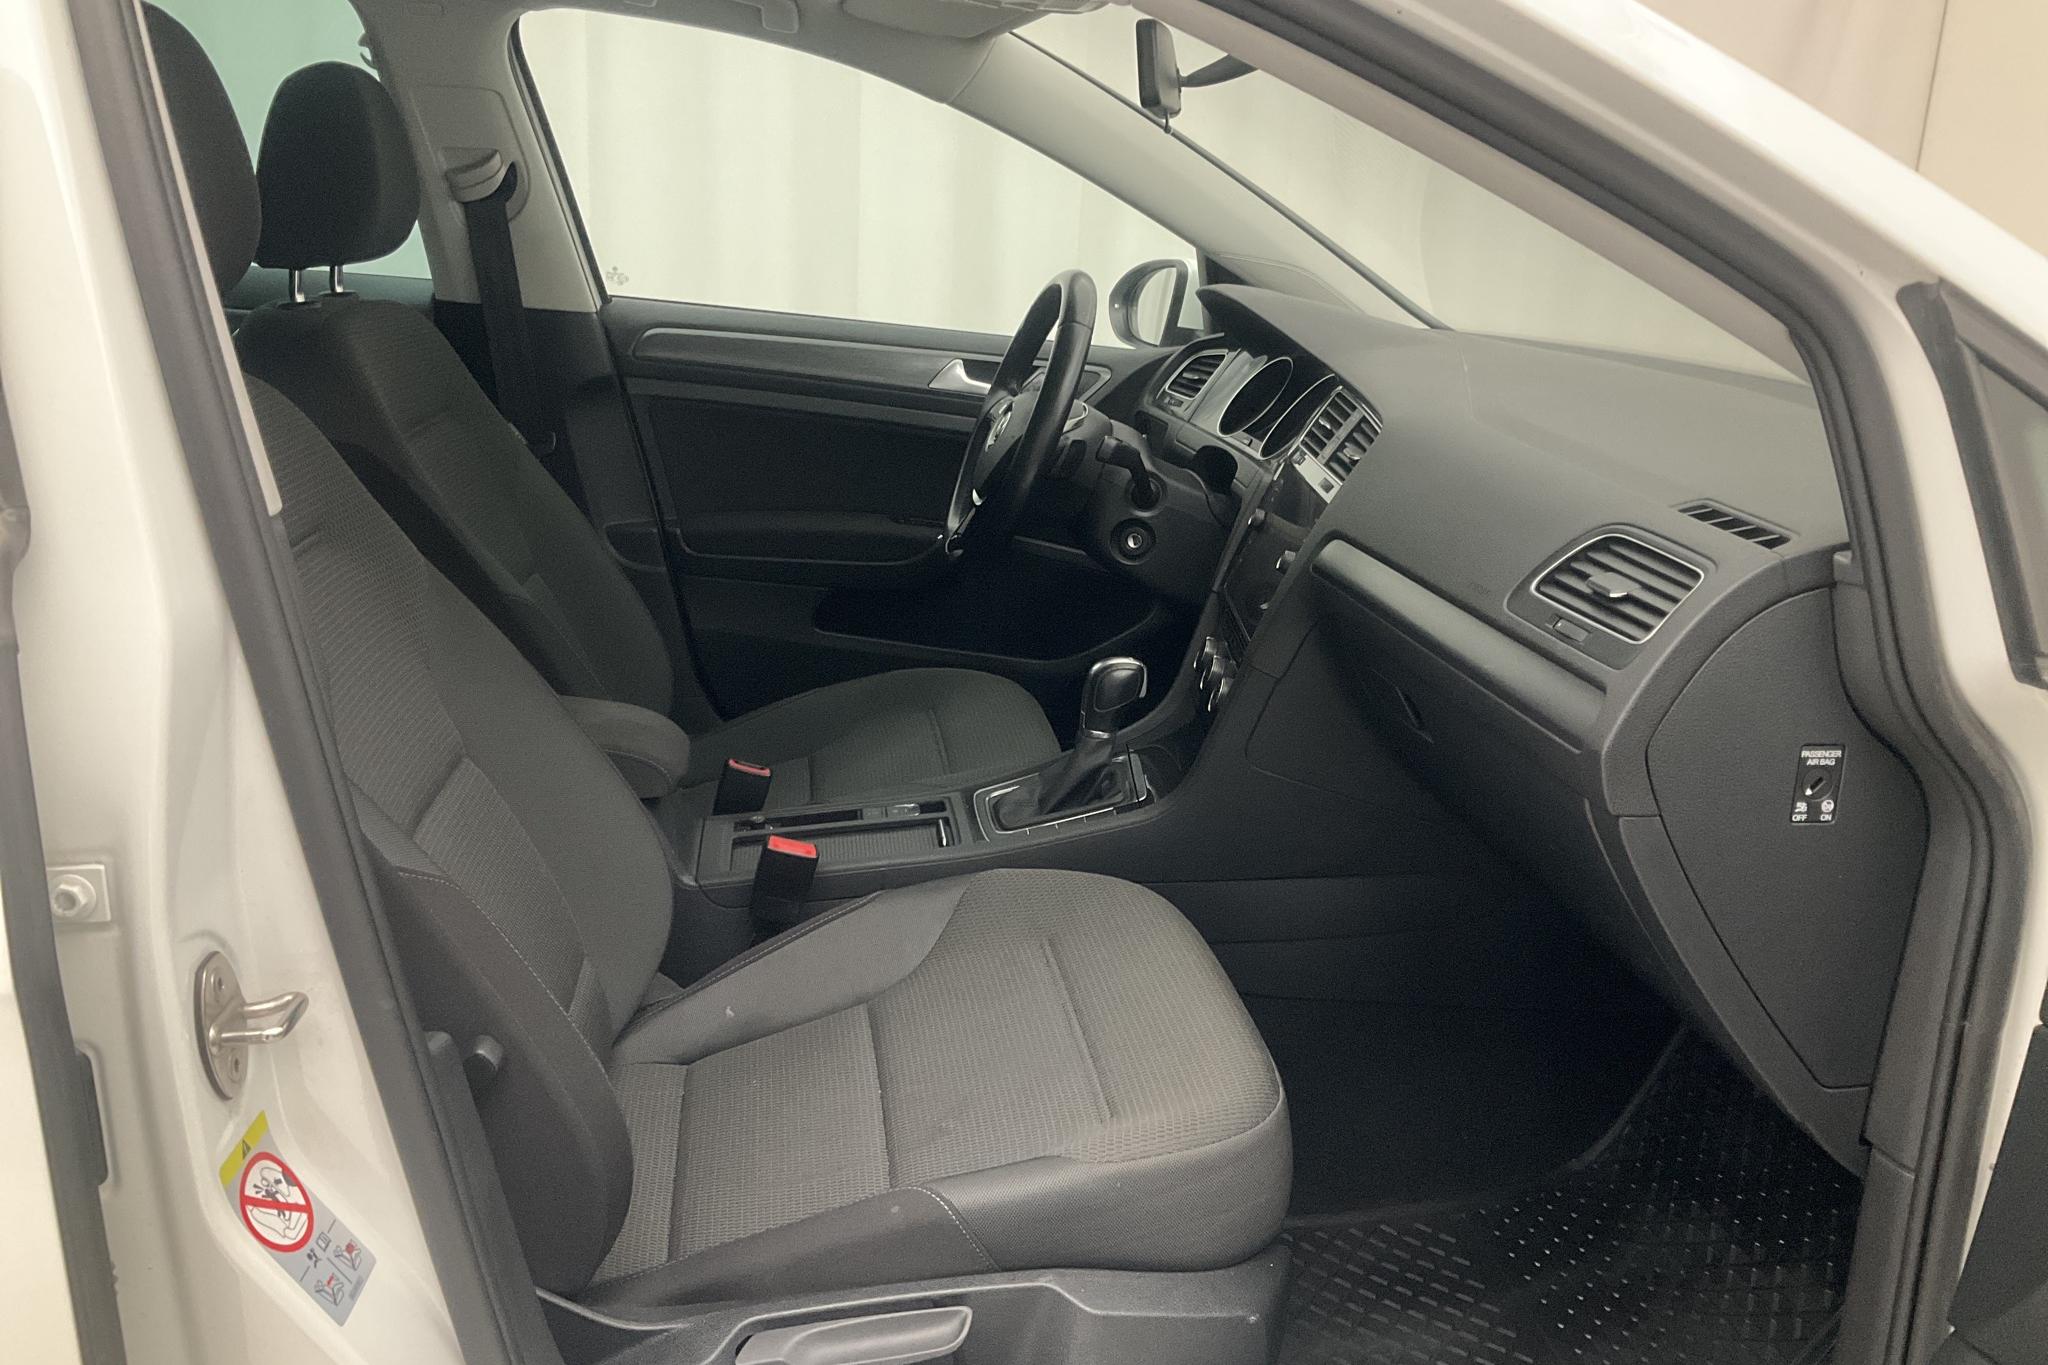 VW Golf VII 1.6 TDI Sportscombi (115hk) - 6 263 mil - Automat - vit - 2019